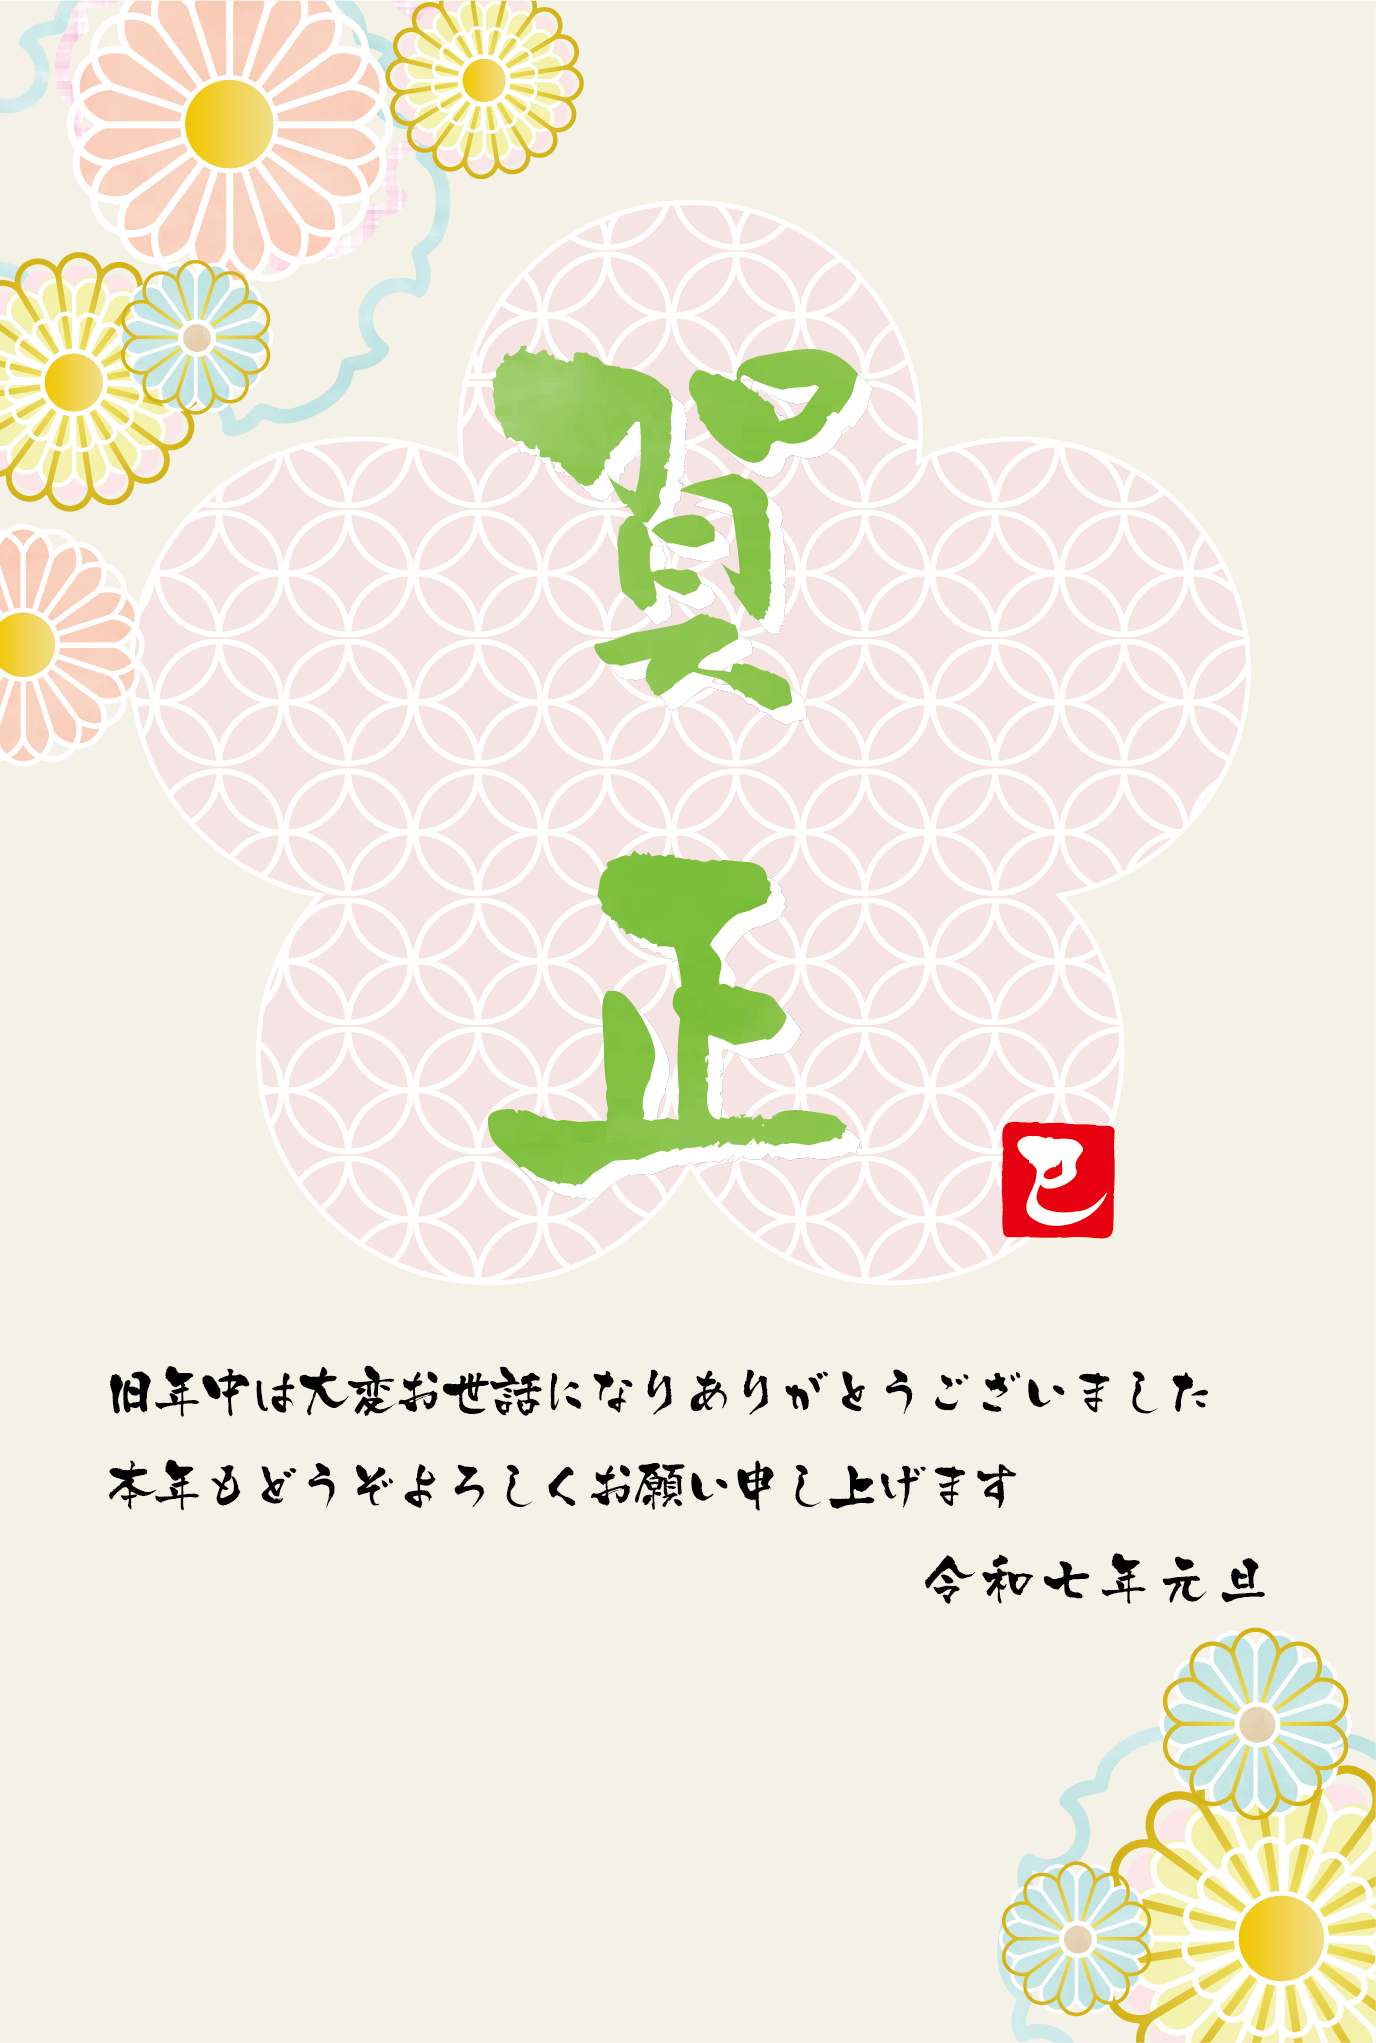 七宝と菊などの和風デザイン年賀状テンプレート